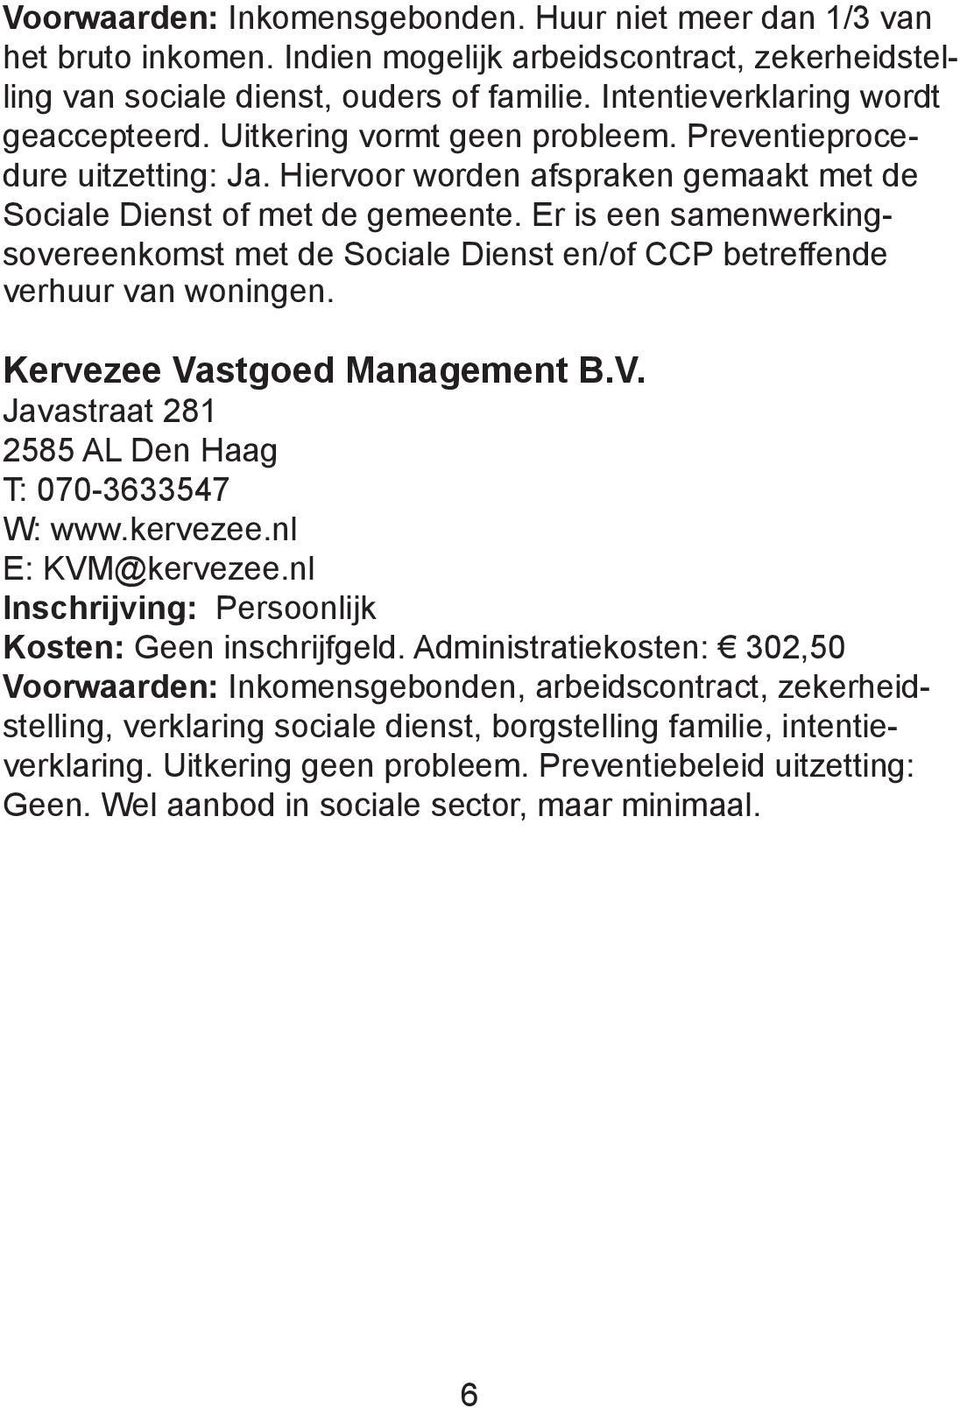 Er is een samenwerkingsovereenkomst met de Sociale Dienst en/of CCP betreffende verhuur van woningen. Kervezee Vastgoed Management B.V. Javastraat 281 2585 AL Den Haag T: 070-3633547 W: www.kervezee.